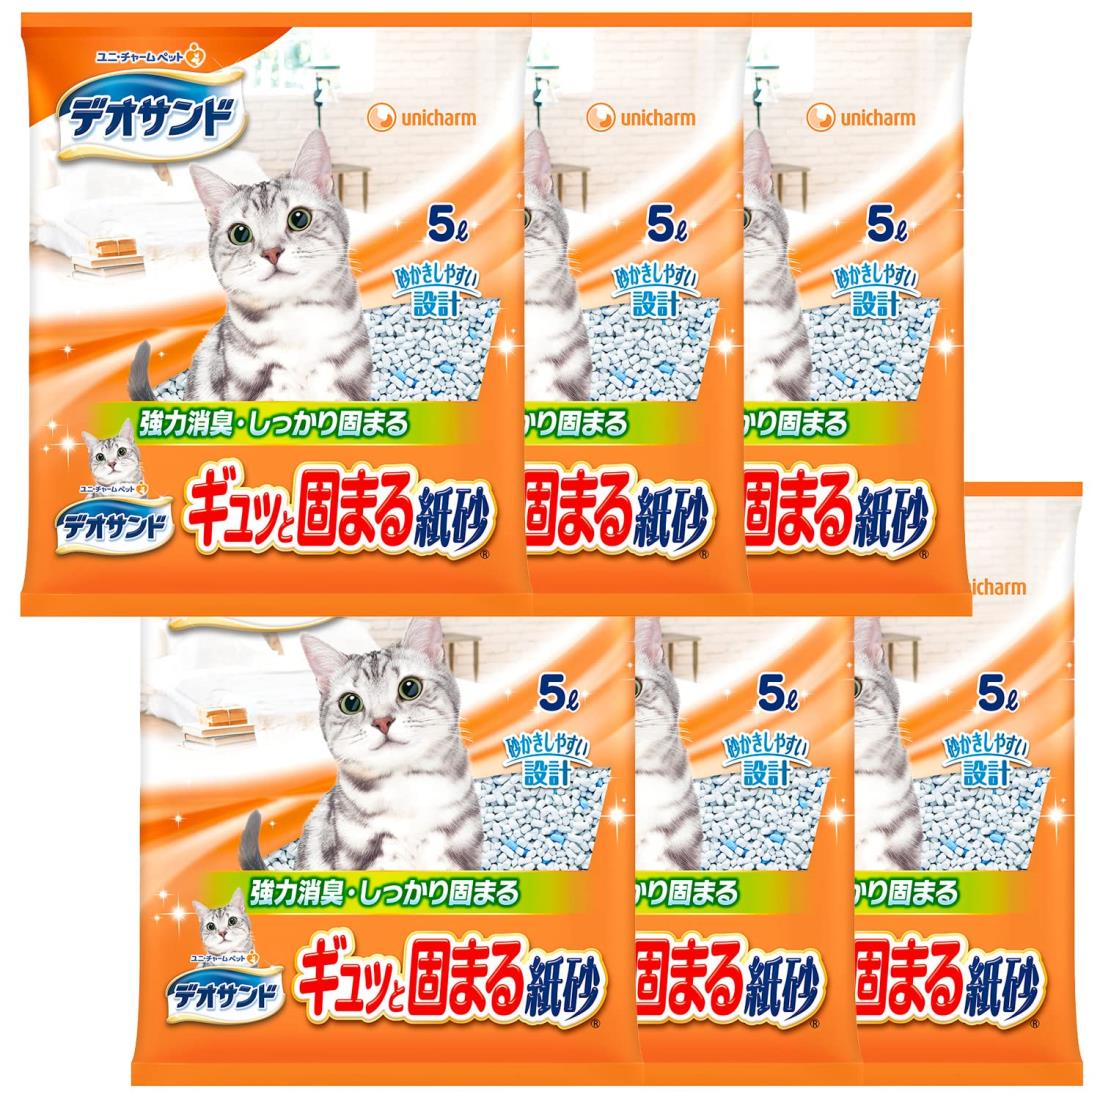 【まとめ買い】デオサンド 猫用 サンド ギュッと固まる 紙砂 30L(5L×6) おしっこ ペット用品 ユニチャーム 1